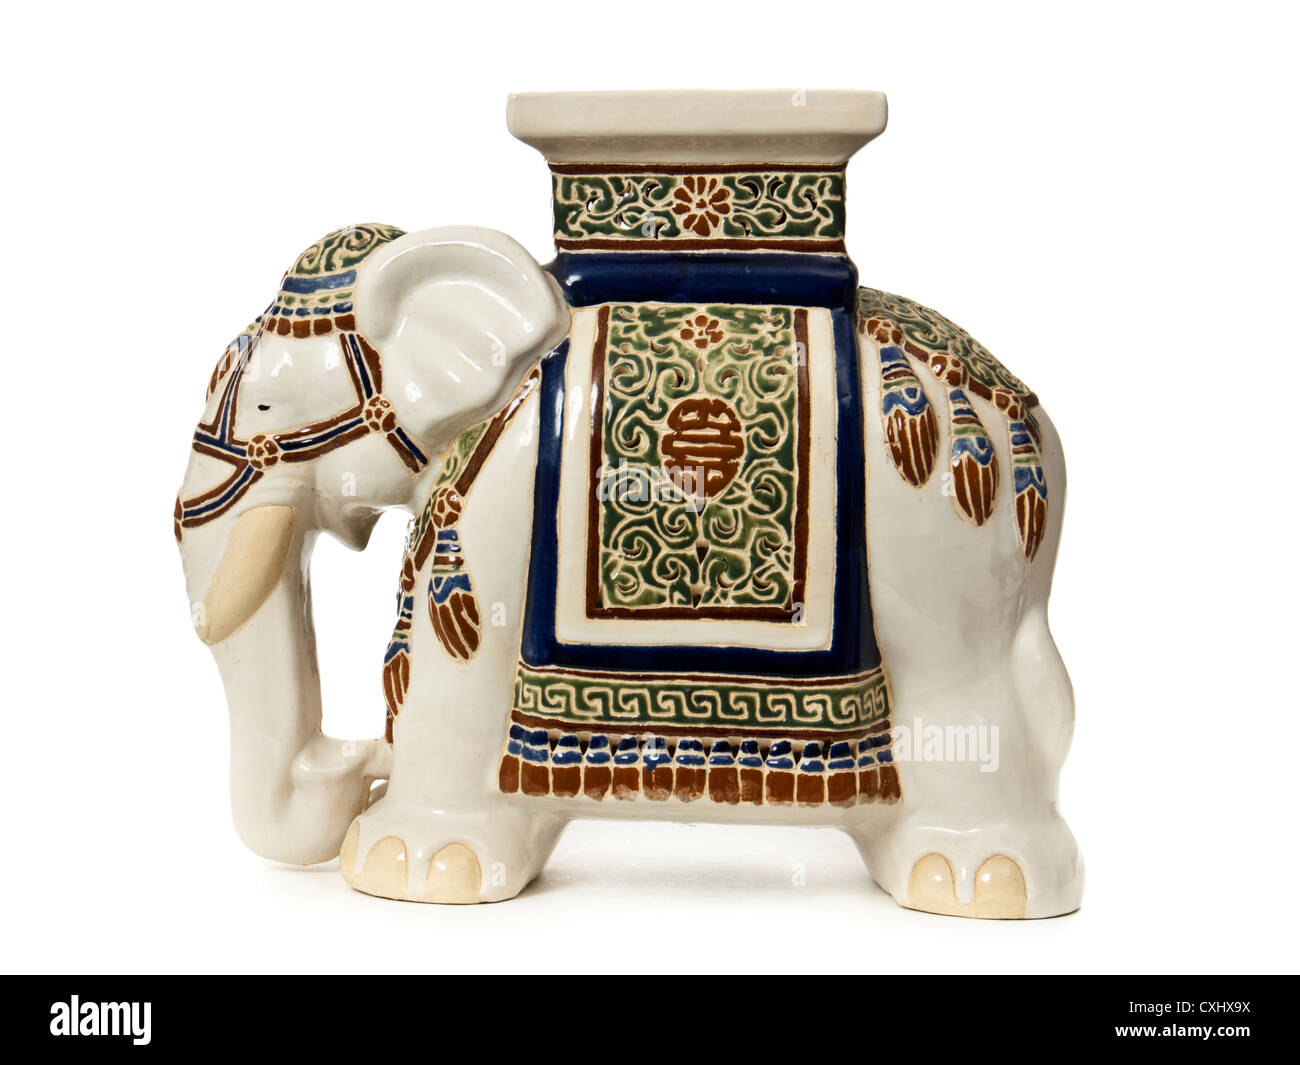 Ceramic elephant immagini e fotografie stock ad alta risoluzione - Alamy